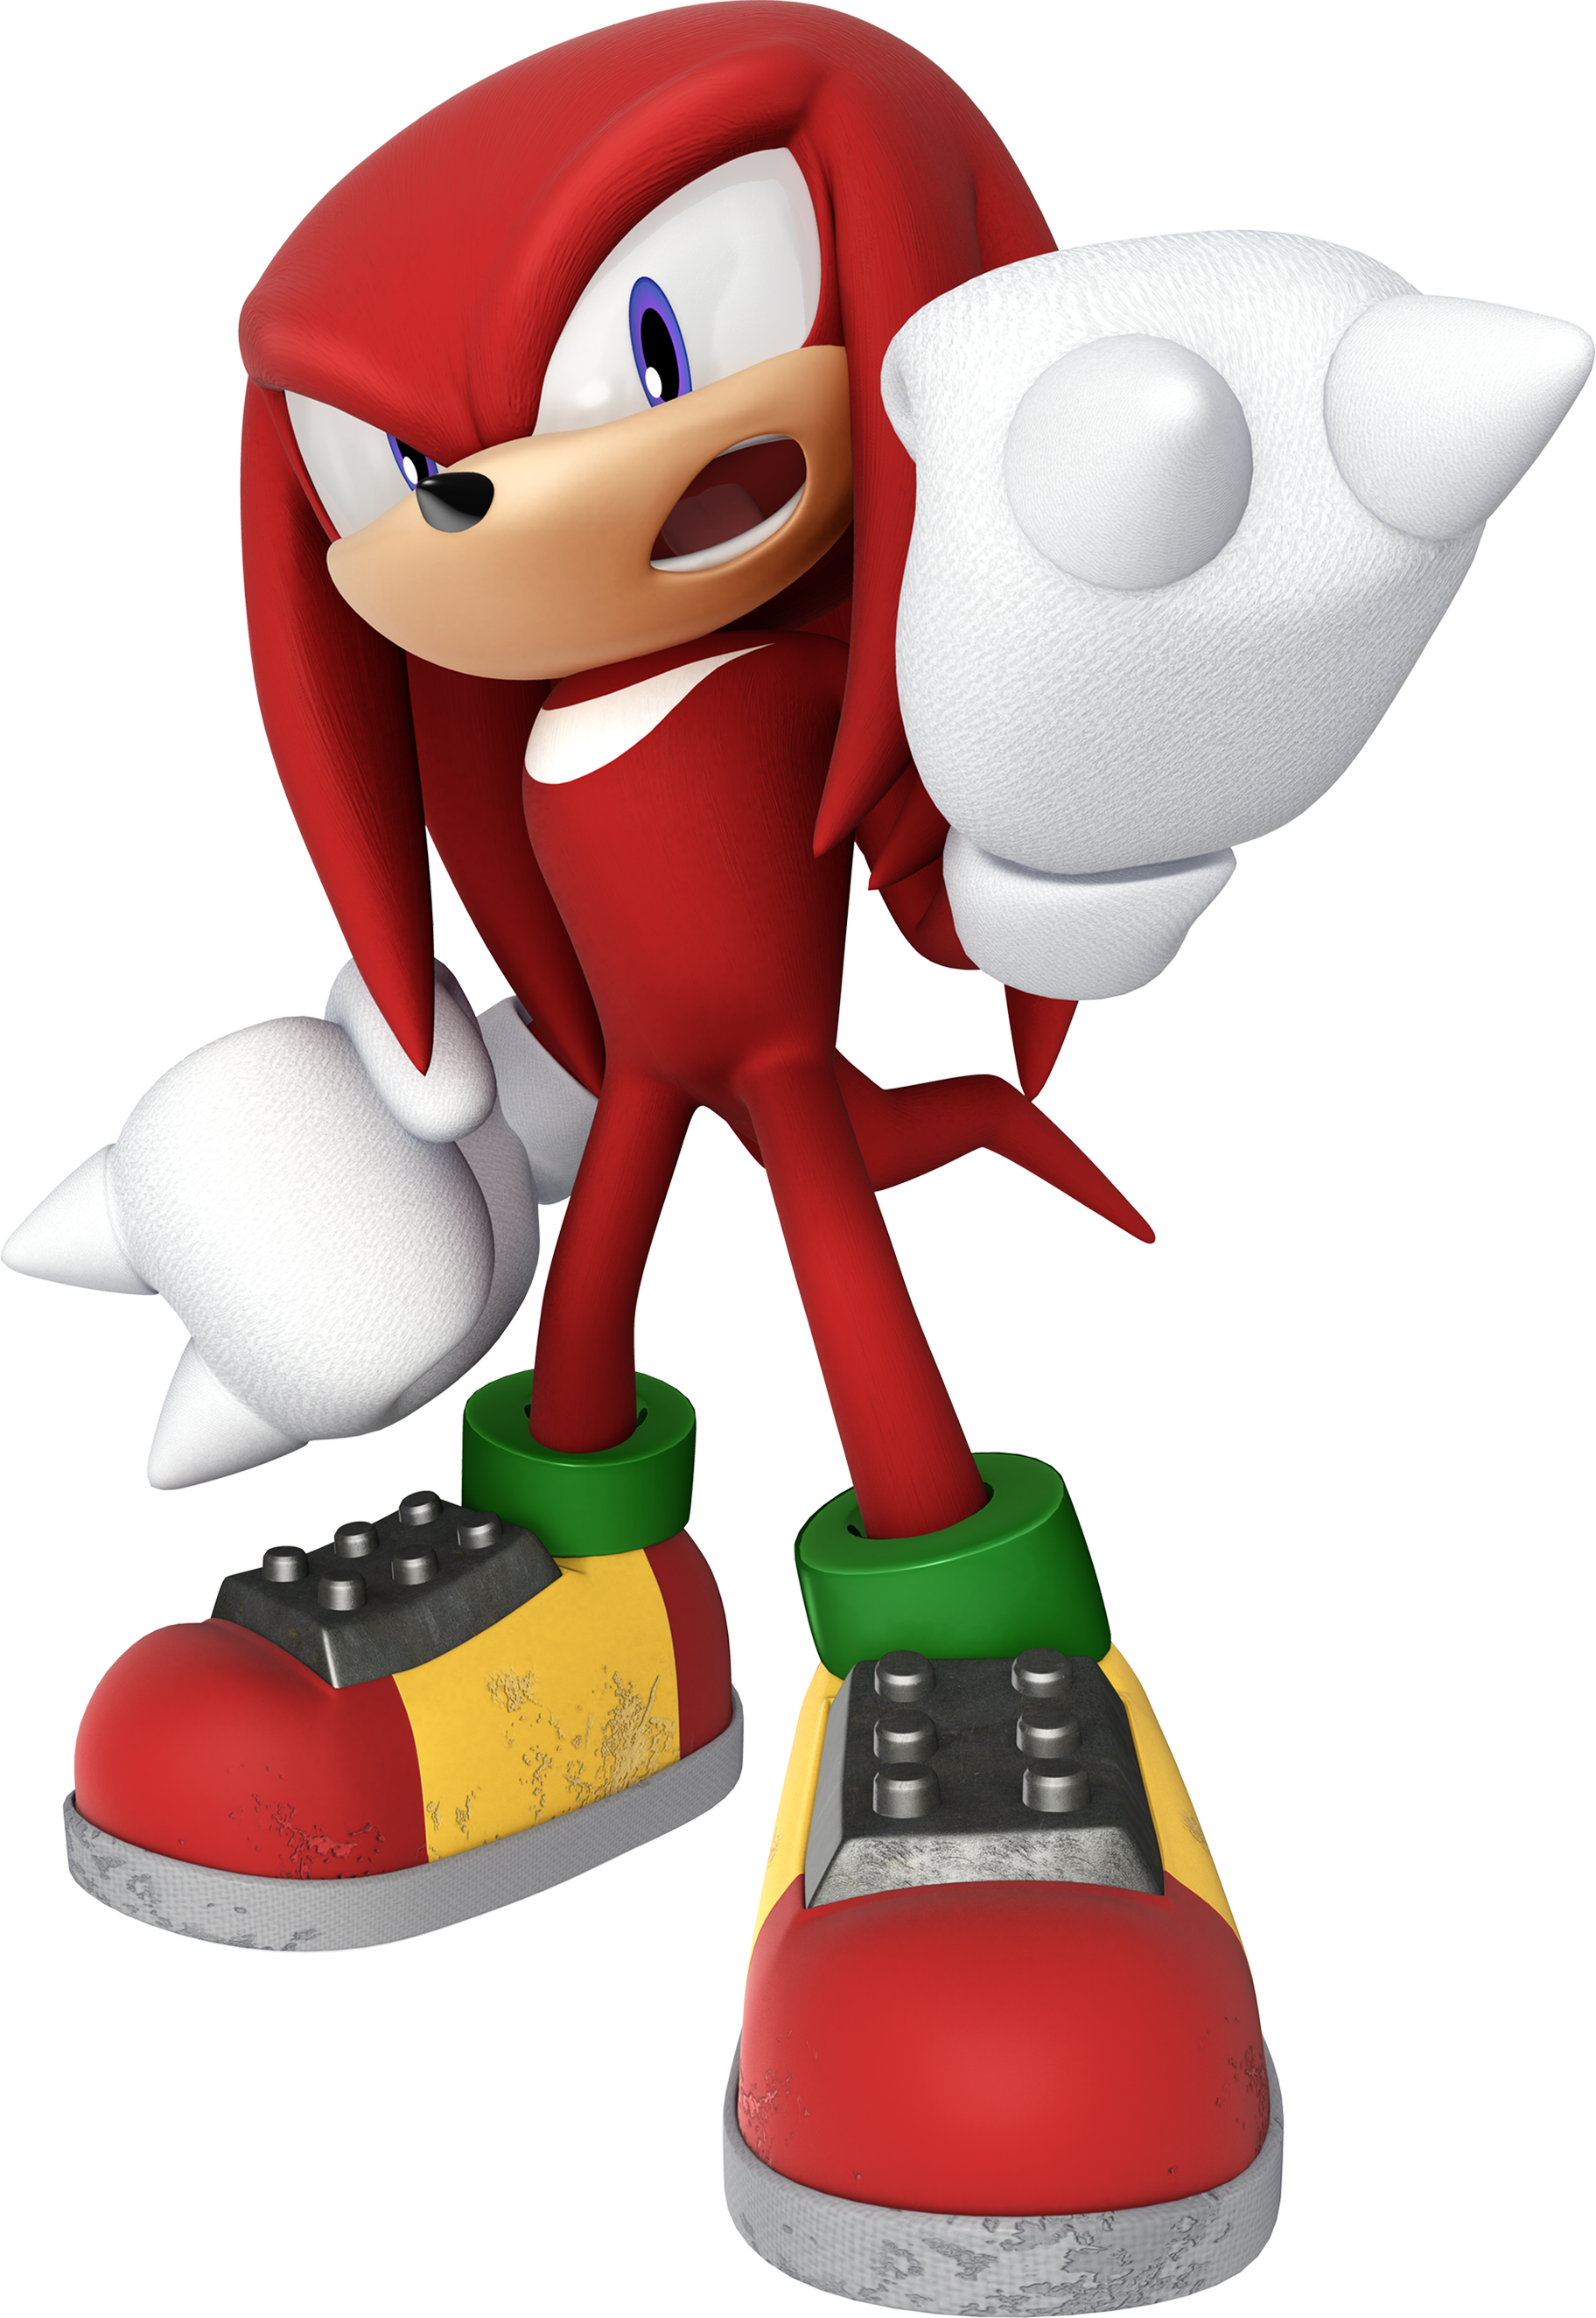 Sonic the Hedgehog (personagem) – Wikipédia, a enciclopédia livre   Fantasia do sonic, Sonic the hedgehog, Festas de aniversário do sonic